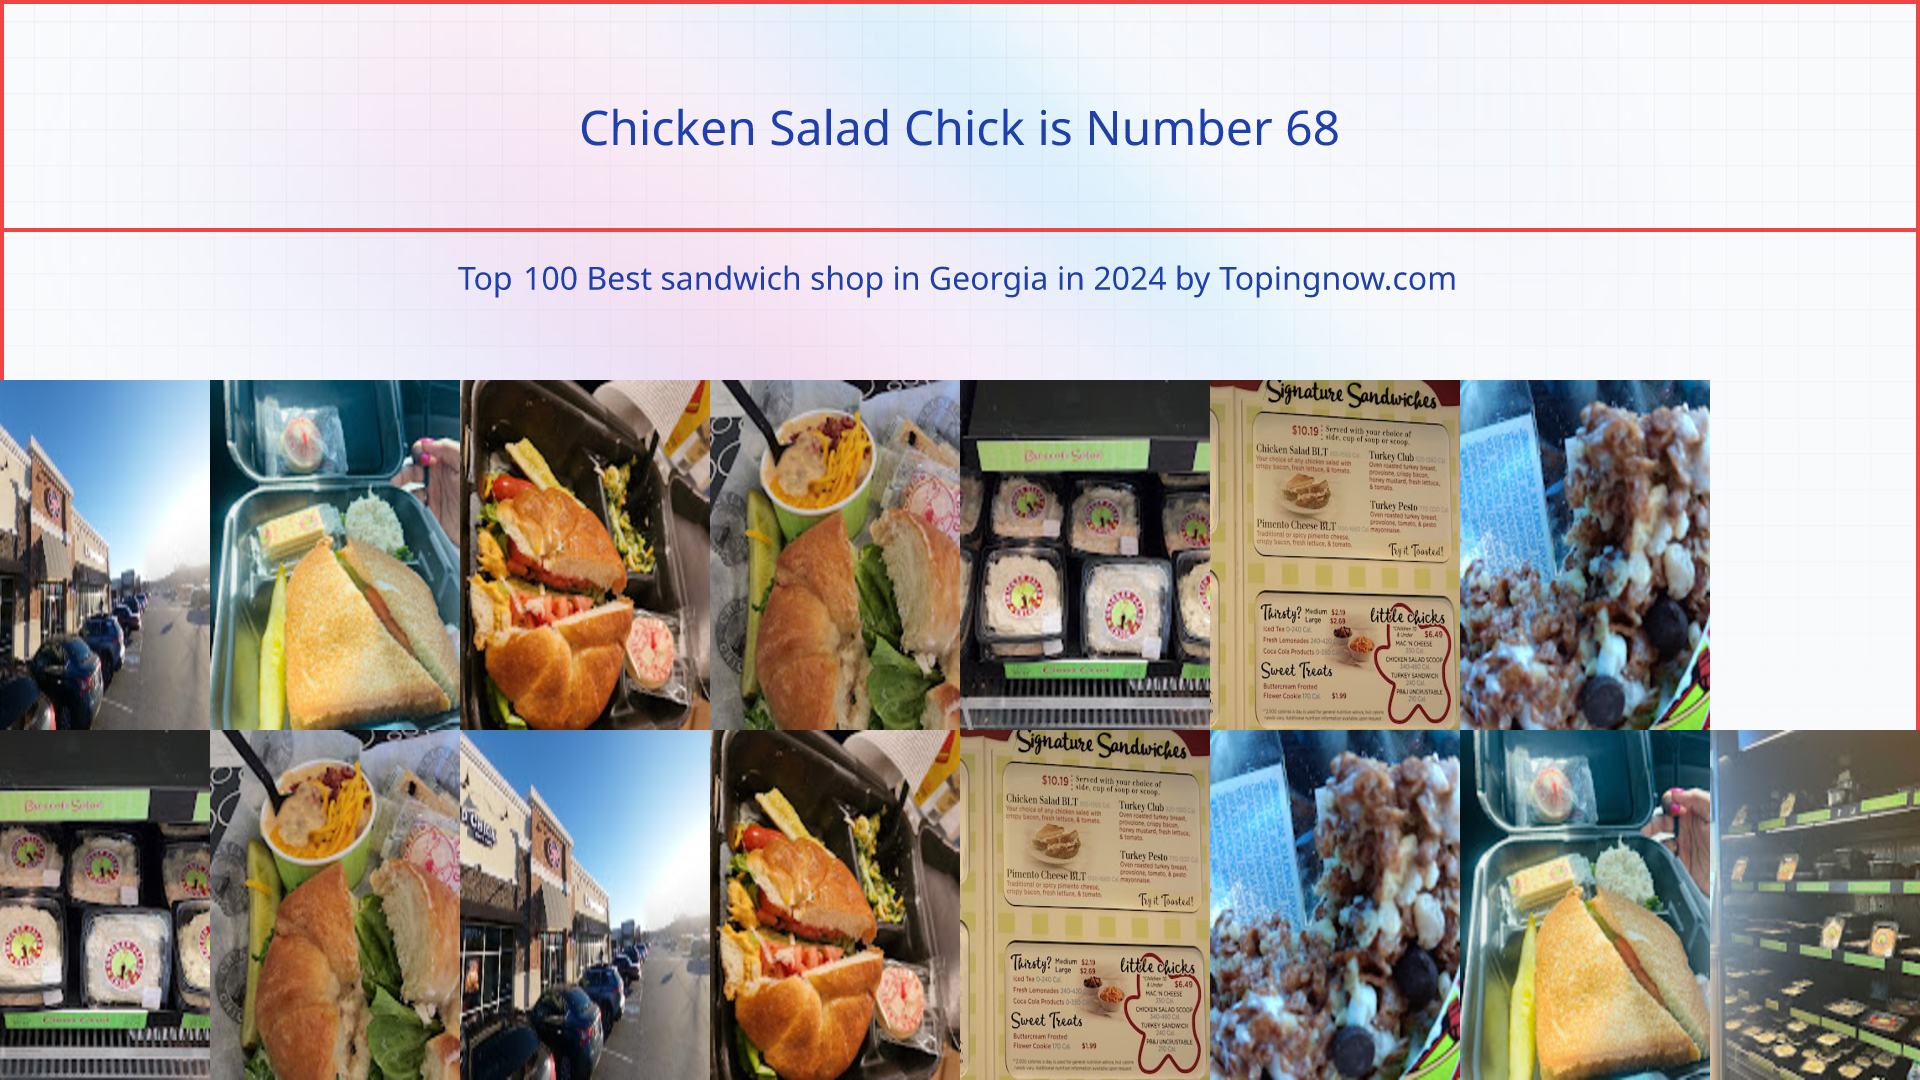 Chicken Salad Chick: Top 100 Best sandwich shop in Georgia in 2024